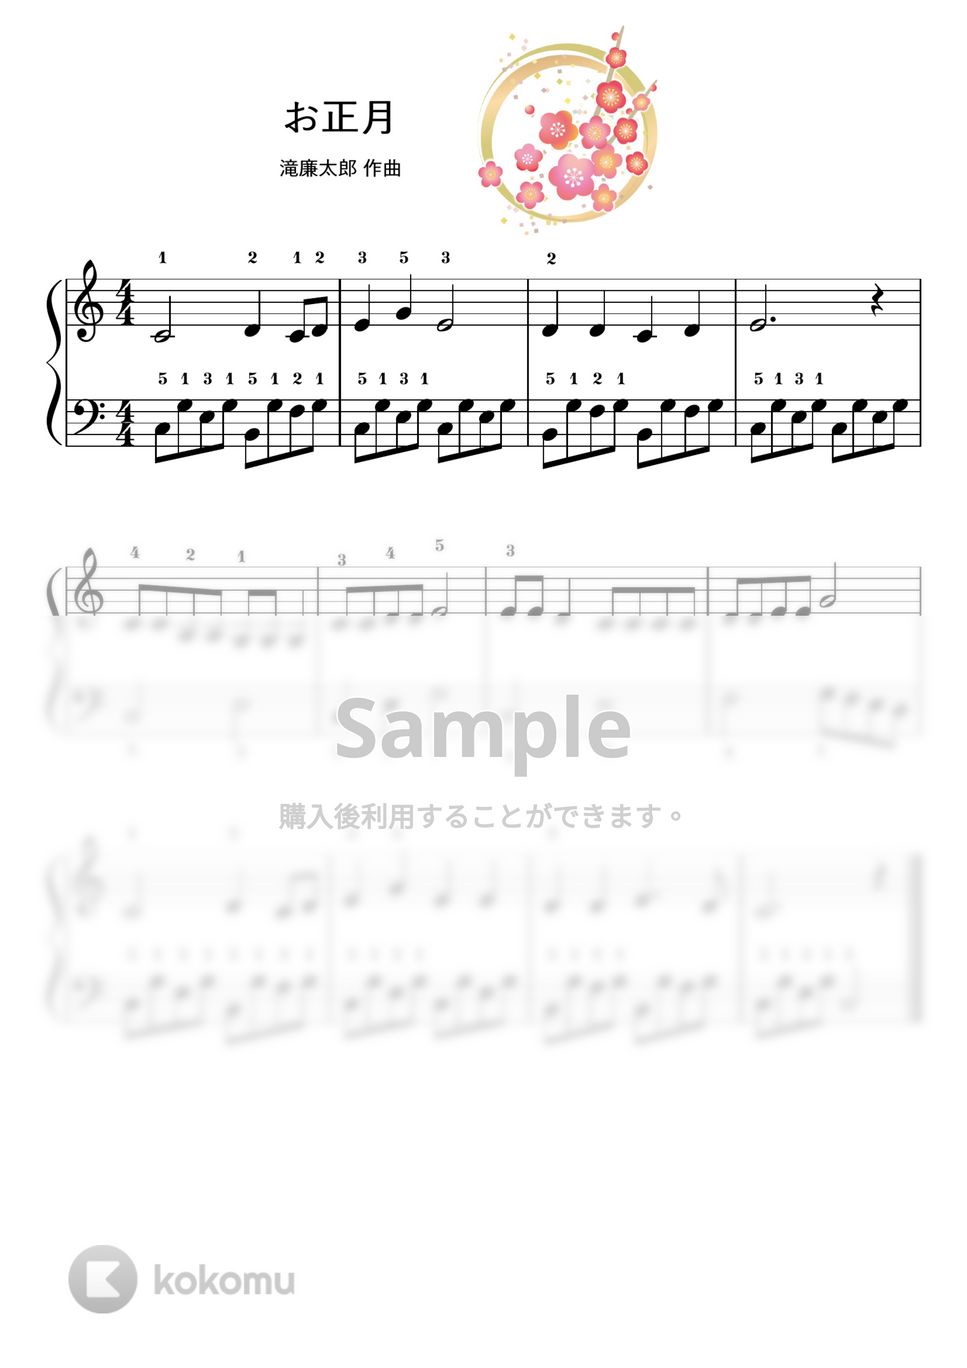 【ピアノ初級】お正月/滝廉太郎 (お正月,正月,新春) by ピアノのせんせいの楽譜集